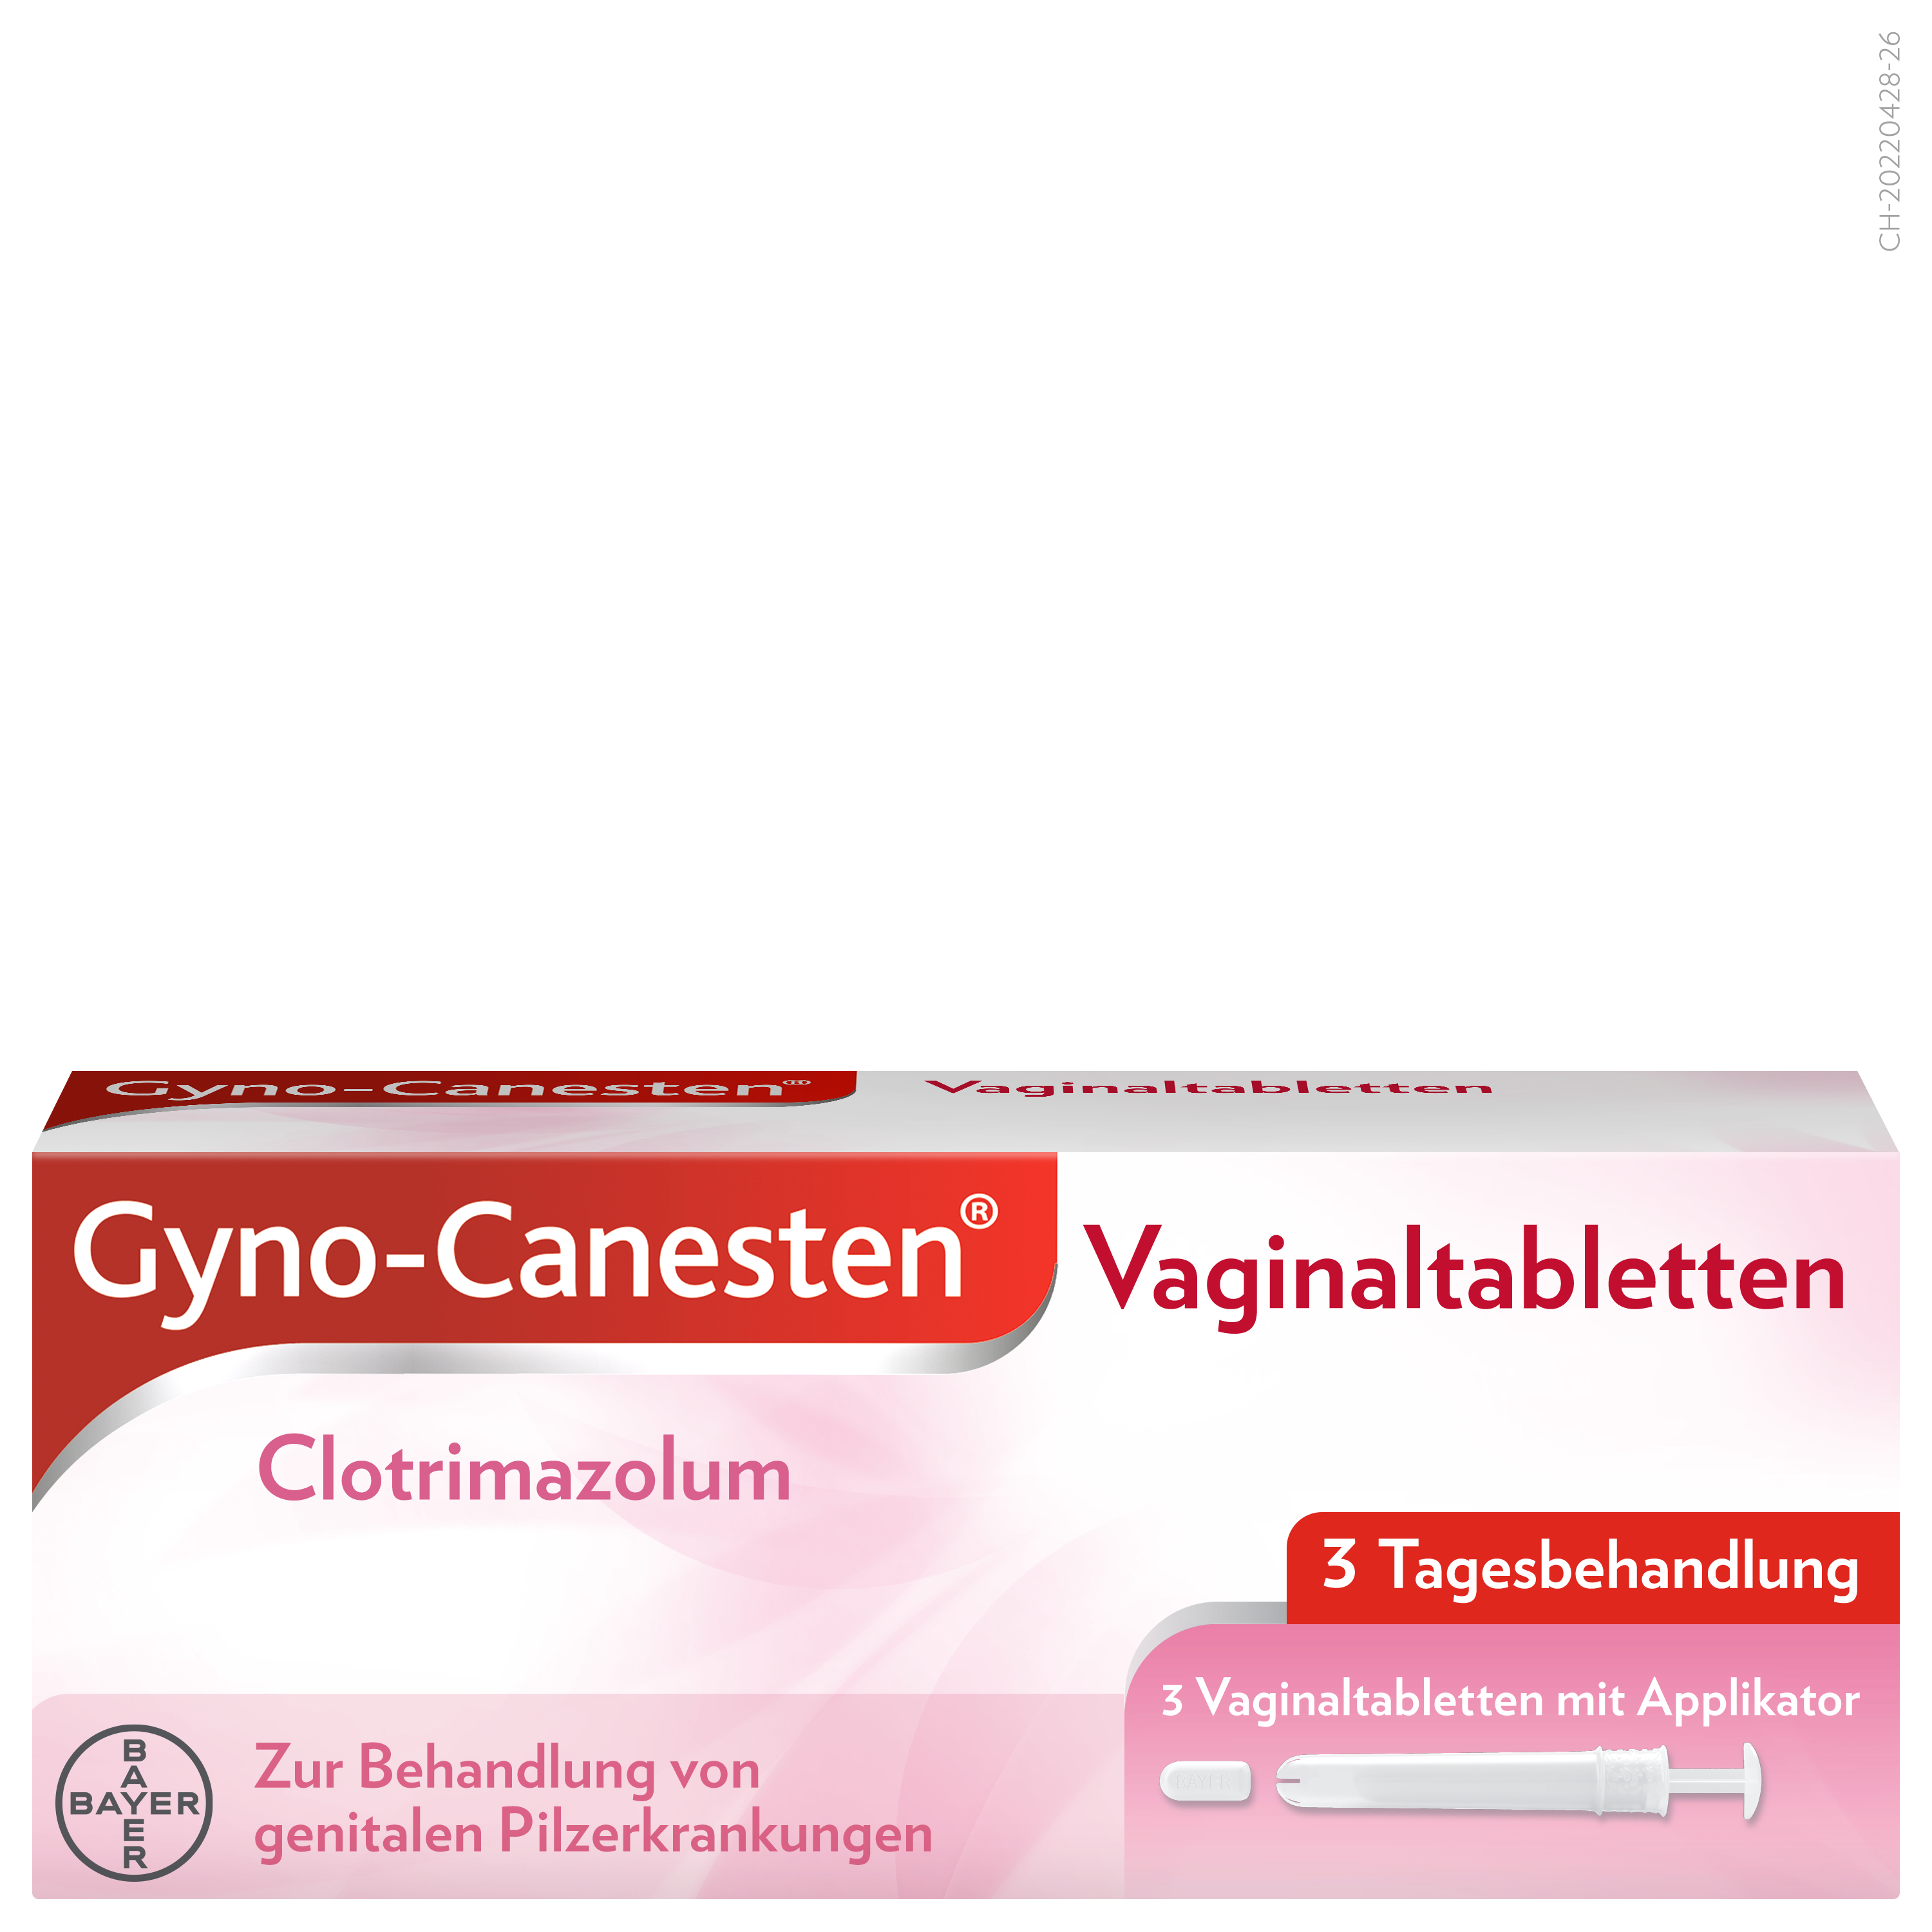 Mycose vaginale : quels sont les traitements des mycoses vaginales ?